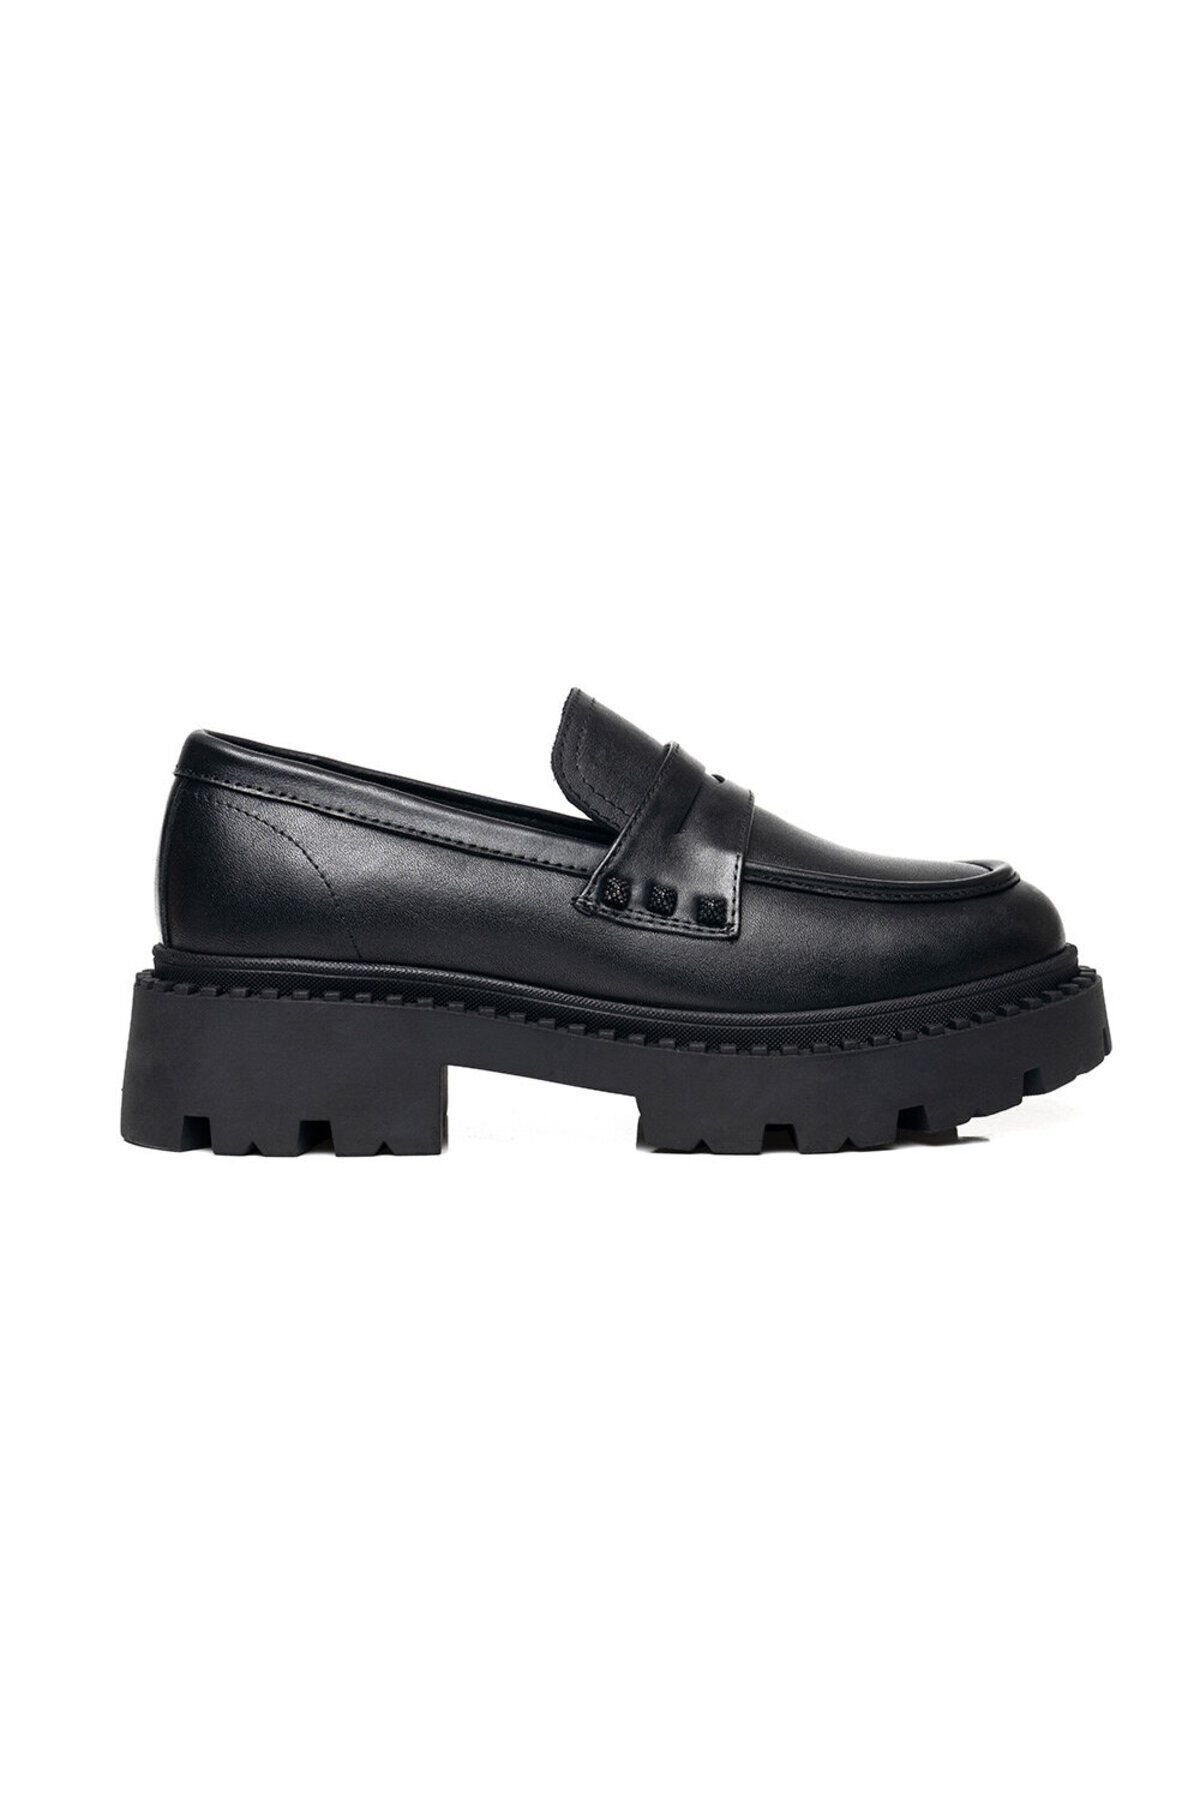 Greyder Kadın Siyah Hakiki Deri Loafer Ayakkabı 3k2ca32650